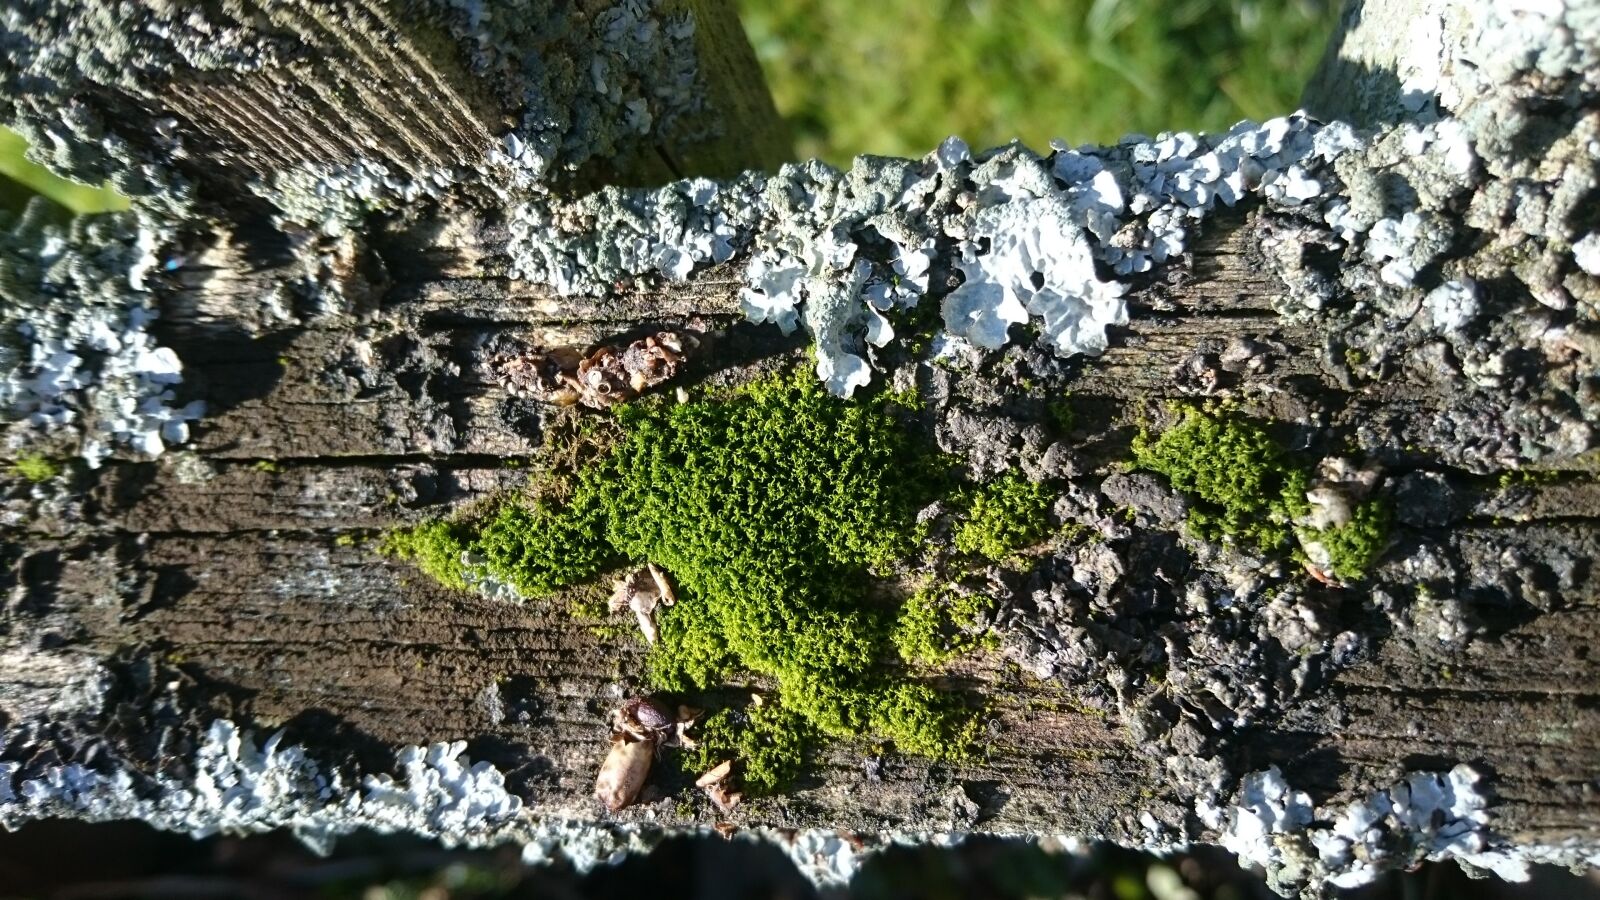 Sony Xperia Z3 sample photo. Moss, macro, nature photography